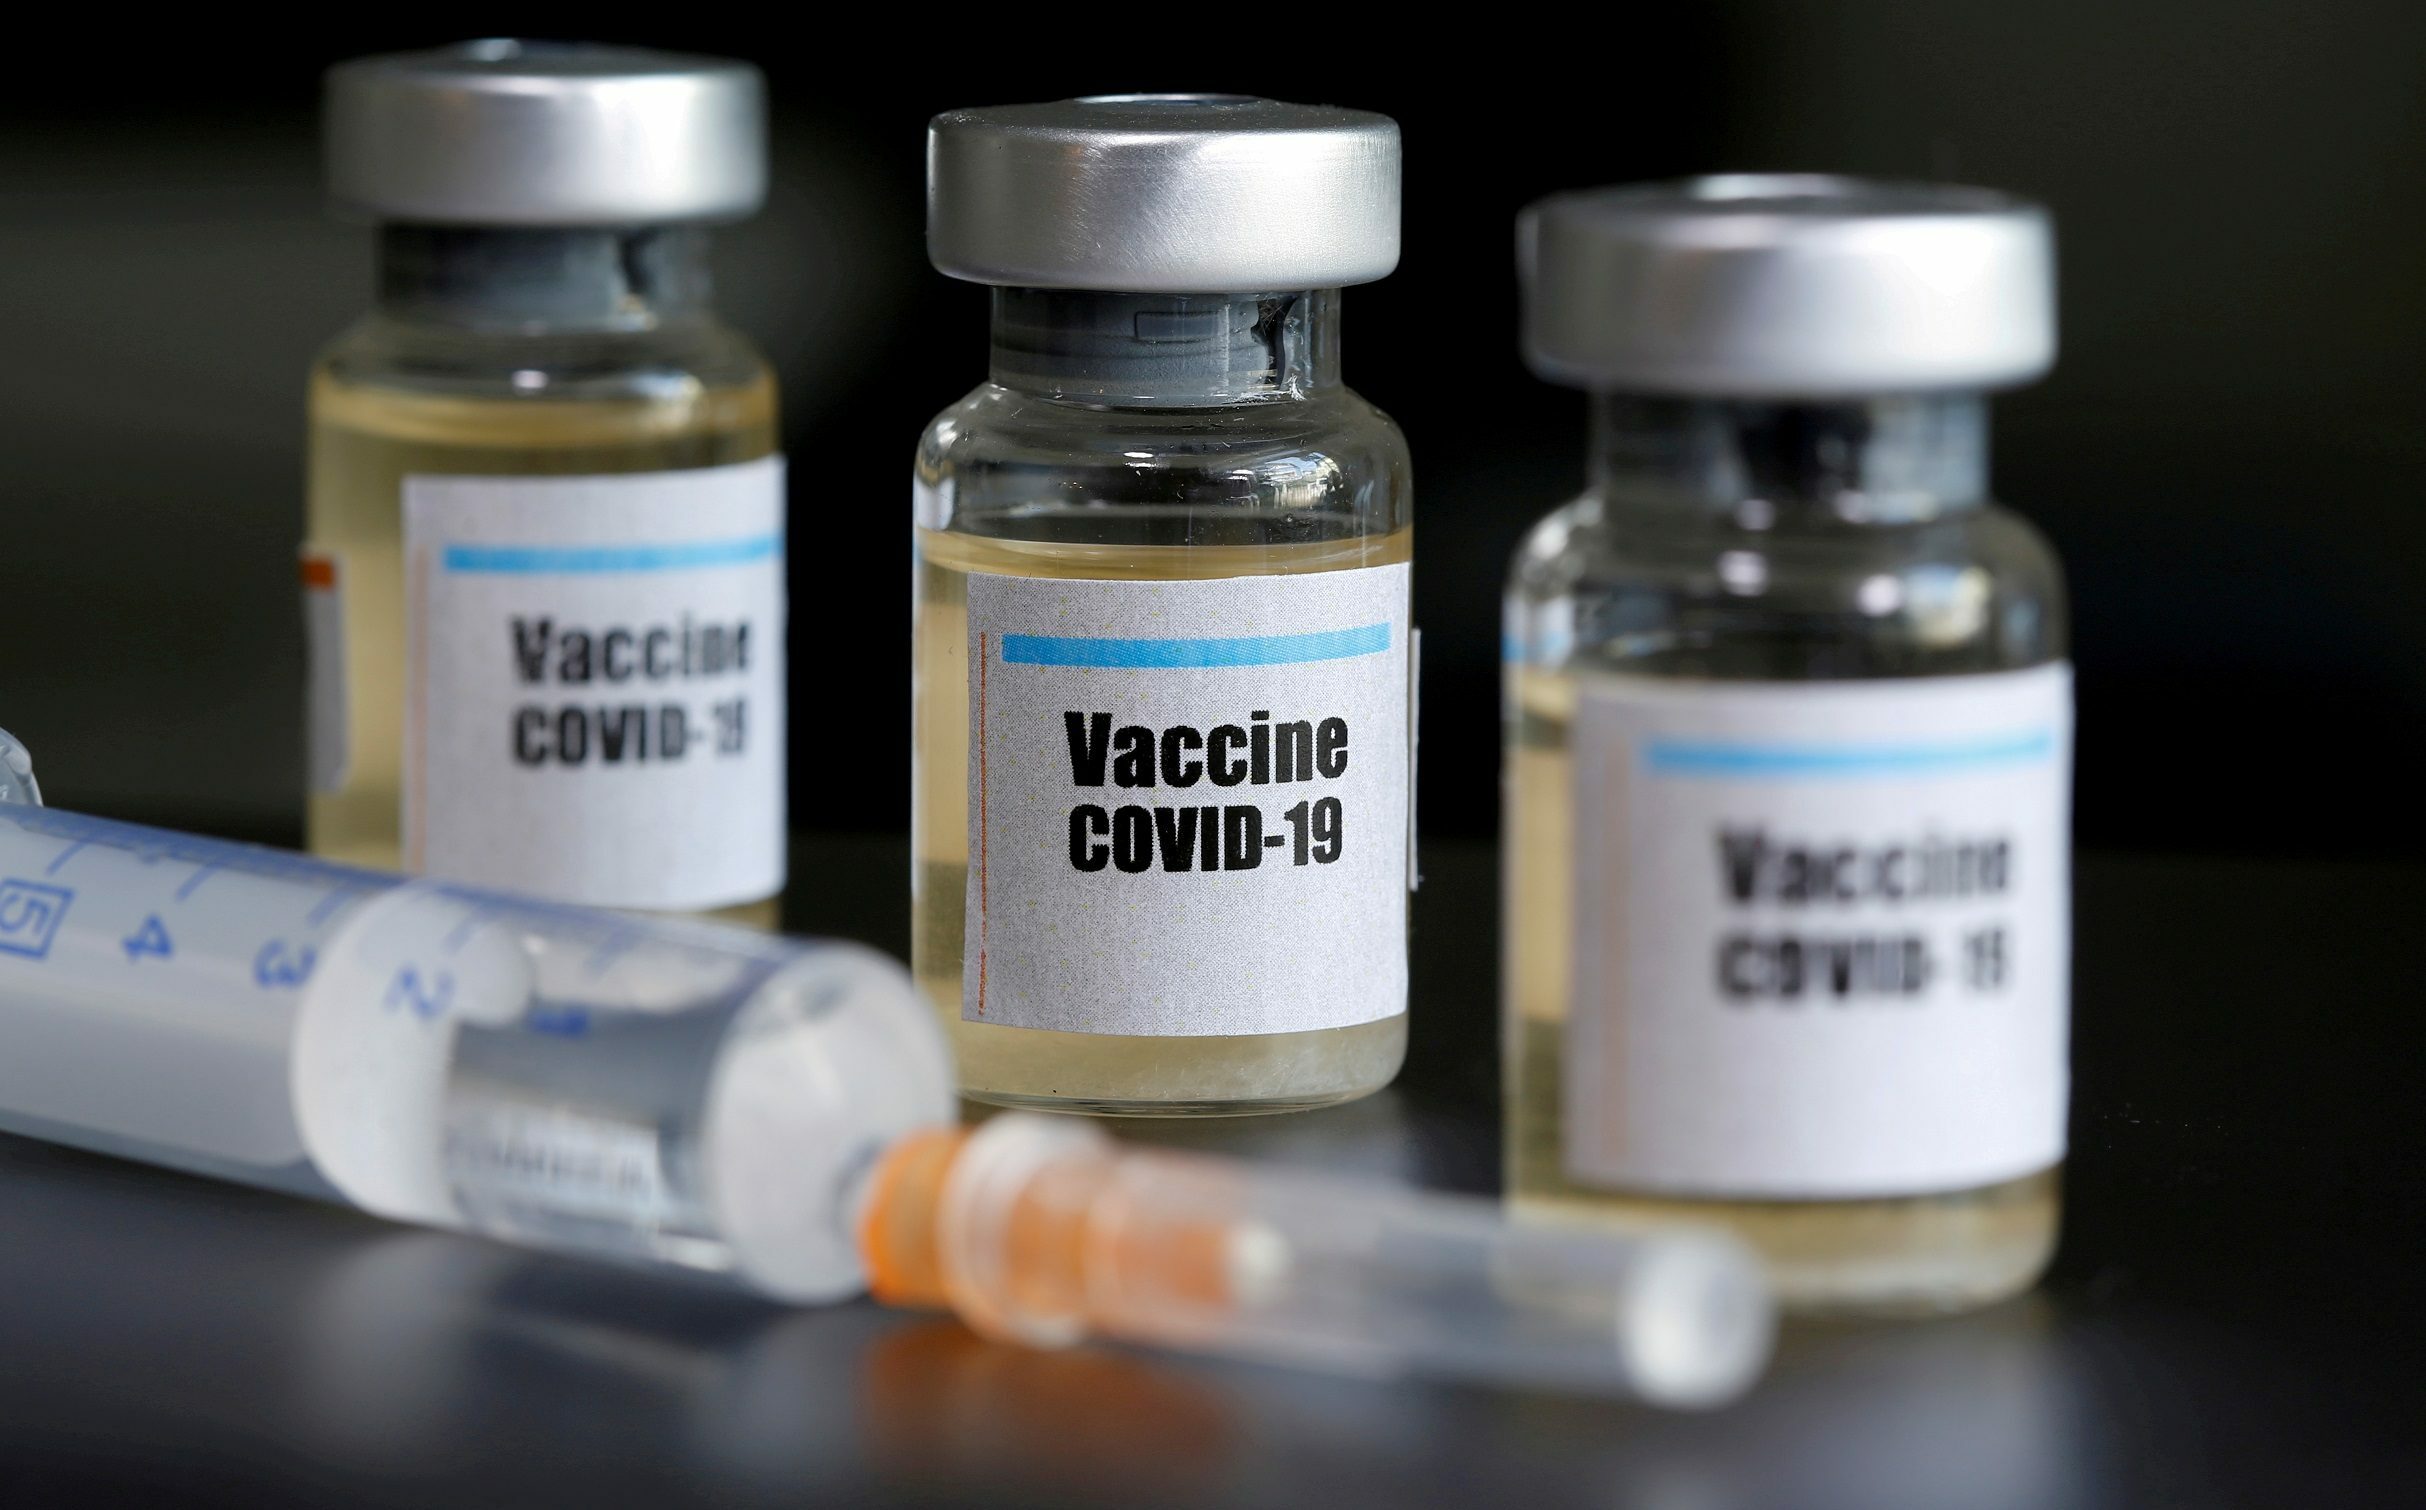 สธ.เผยวัคซีนโควิด-19 อีก 2 ล้านโดส อยู่ในขั้นเจรจา บุคลากรแพทย์-กลุ่มเสี่ยงได้ฉีดก่อน